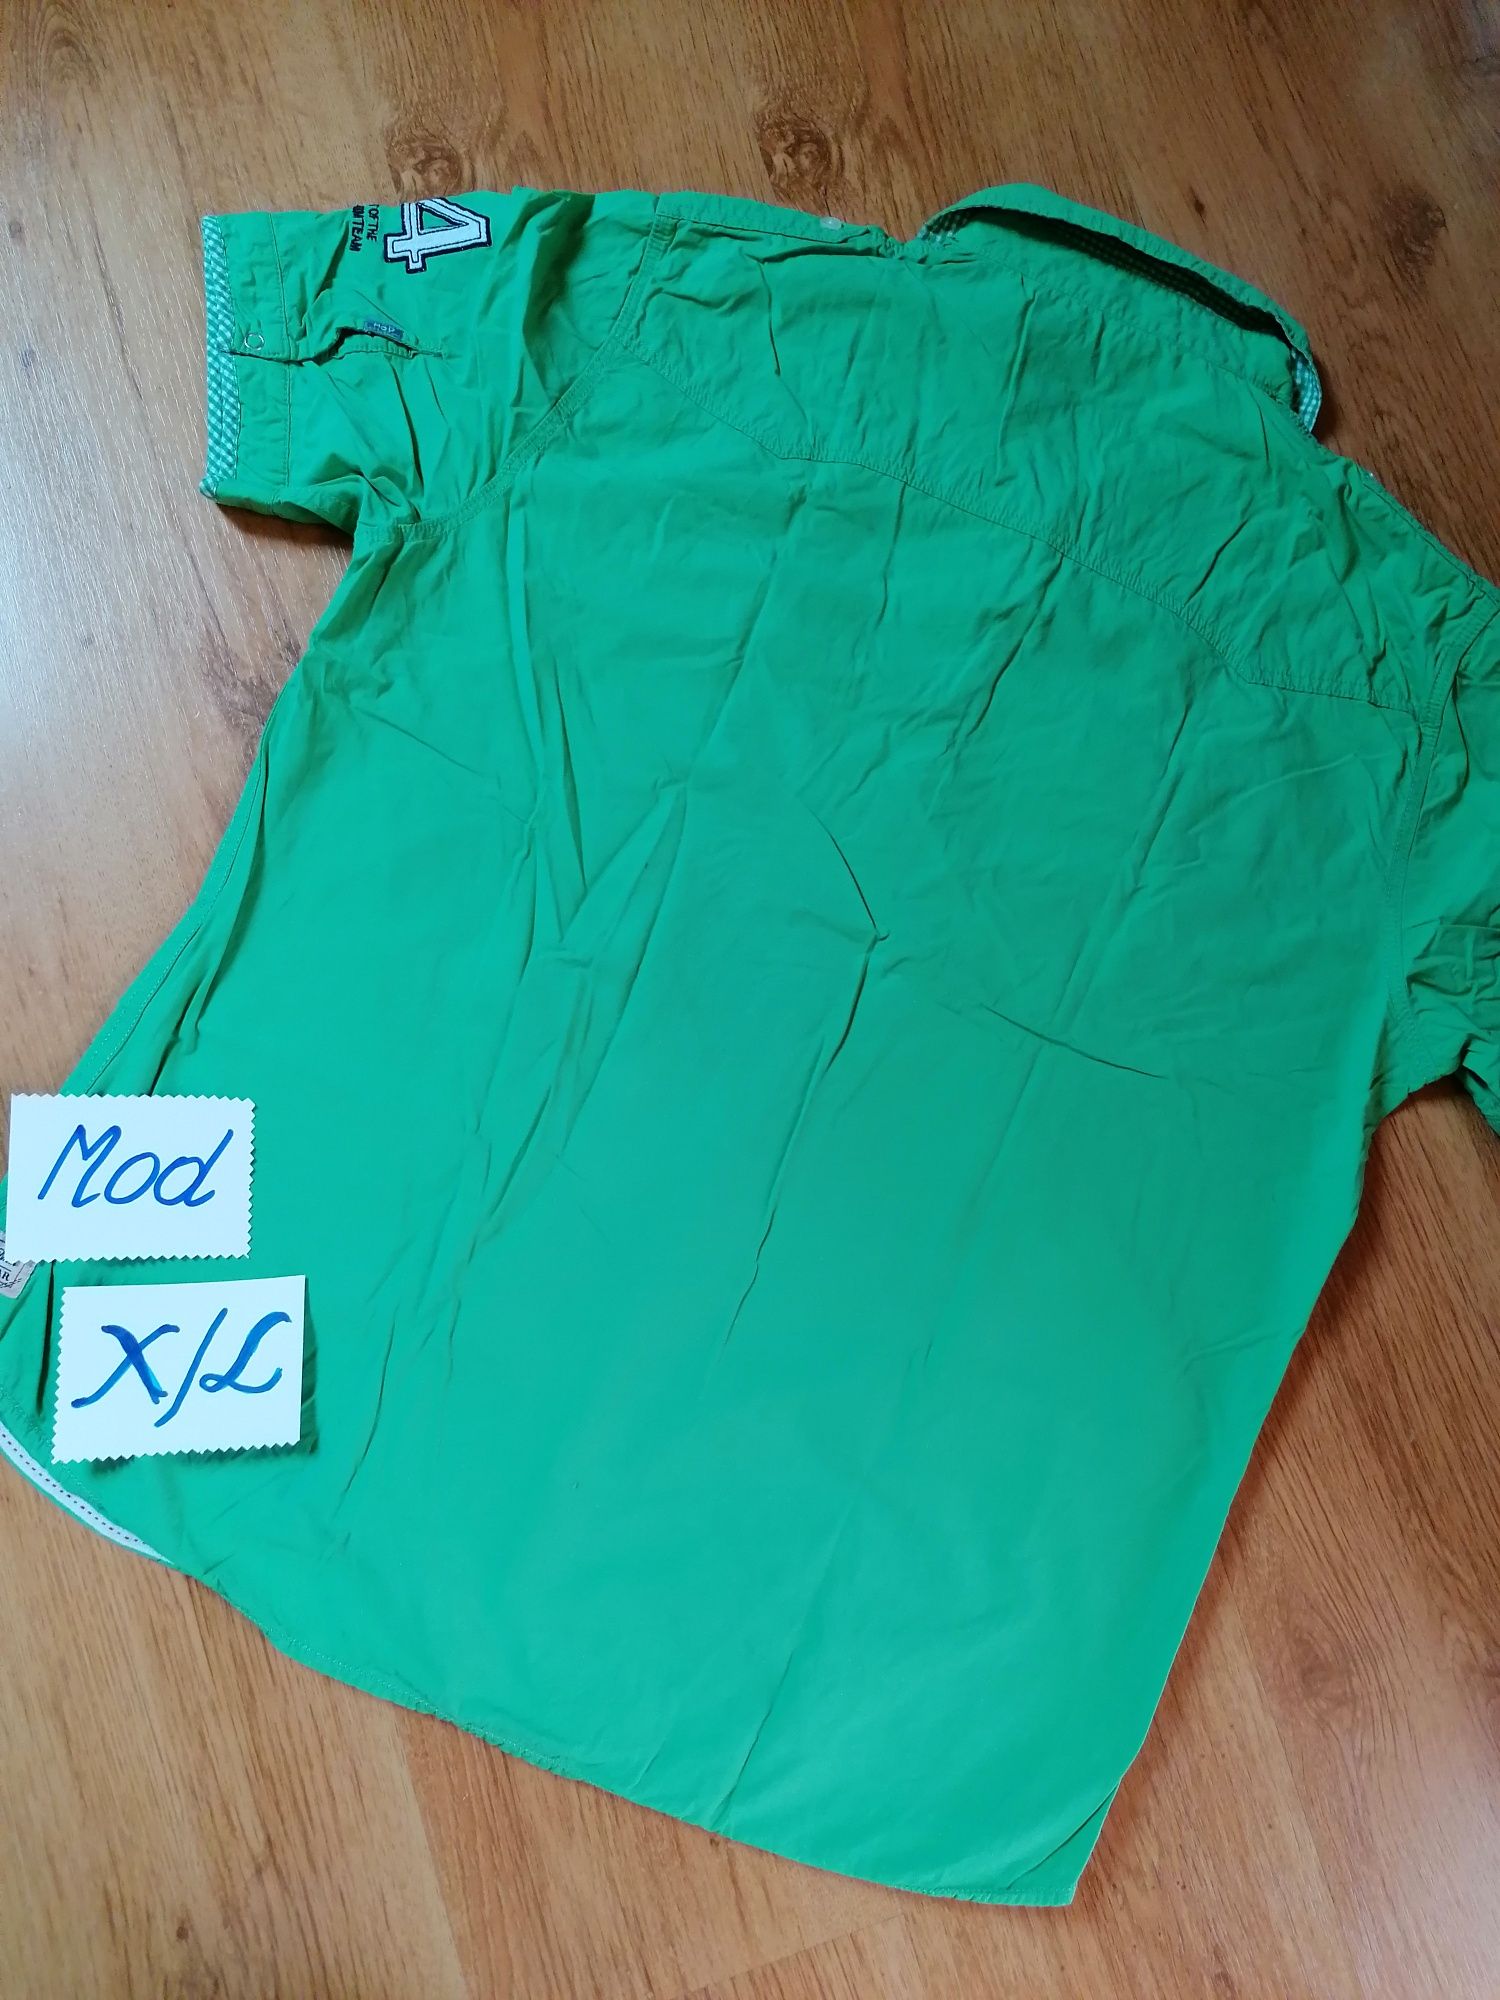 Koszula męska R XL Mod Denim